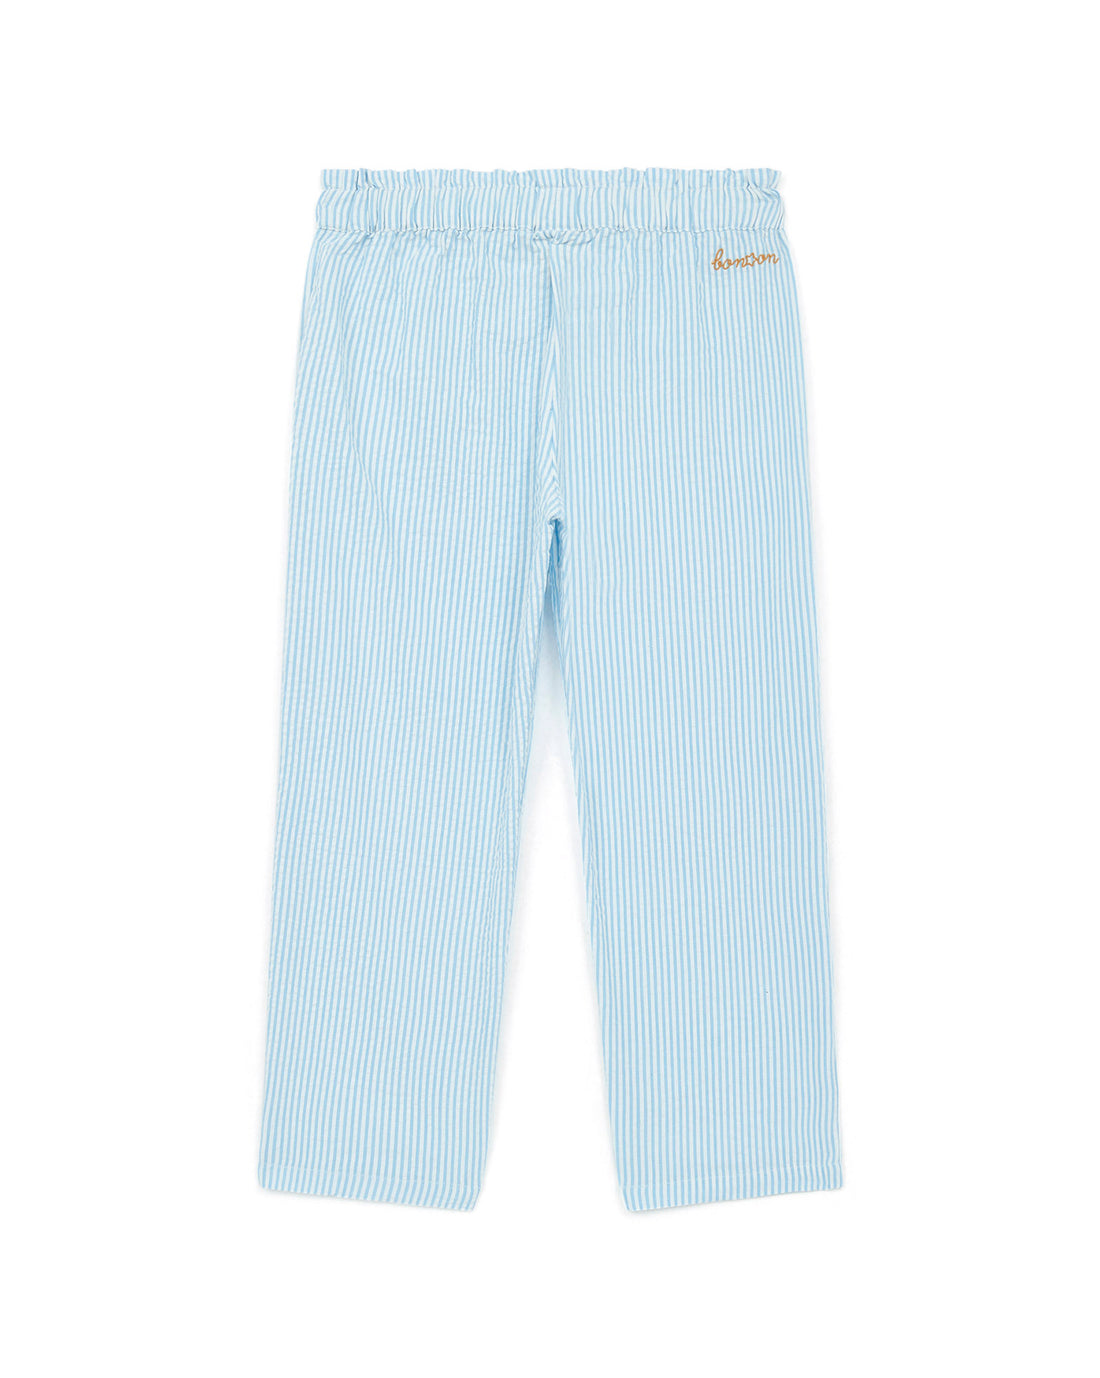 Bonton - light pants - blue stripes